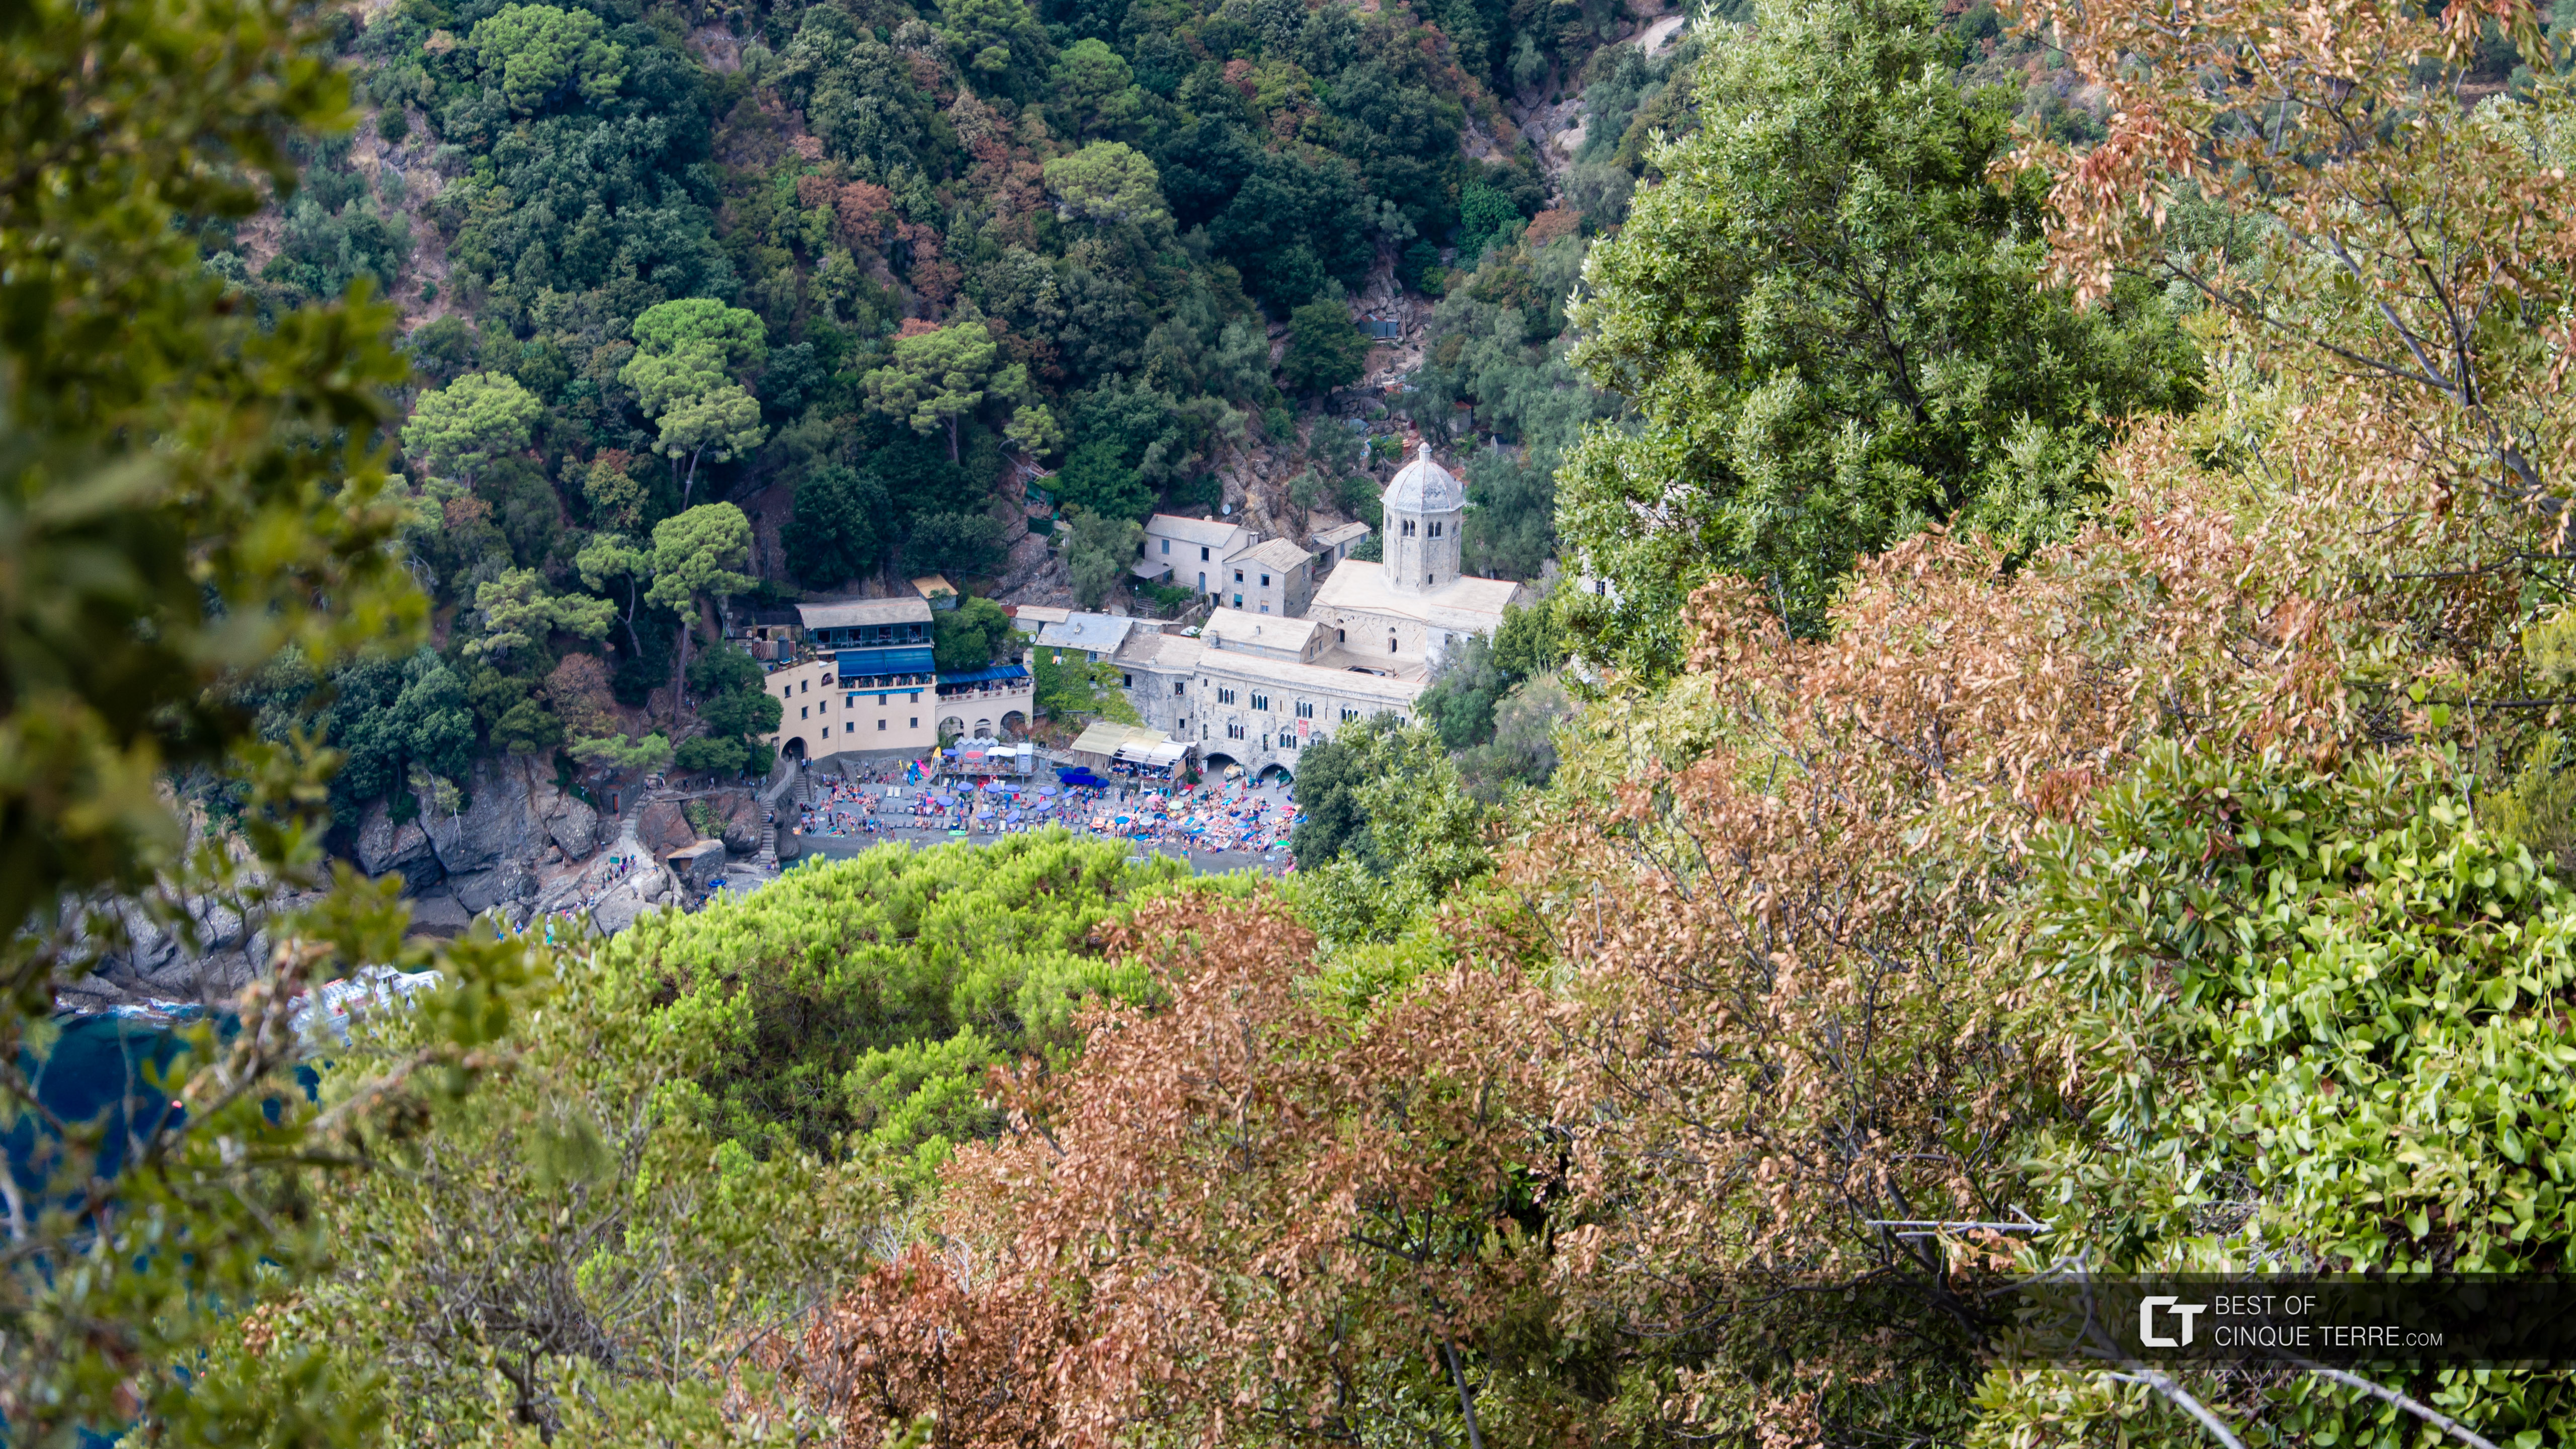 San Fruttuoso Abbey, Portofino, Italy